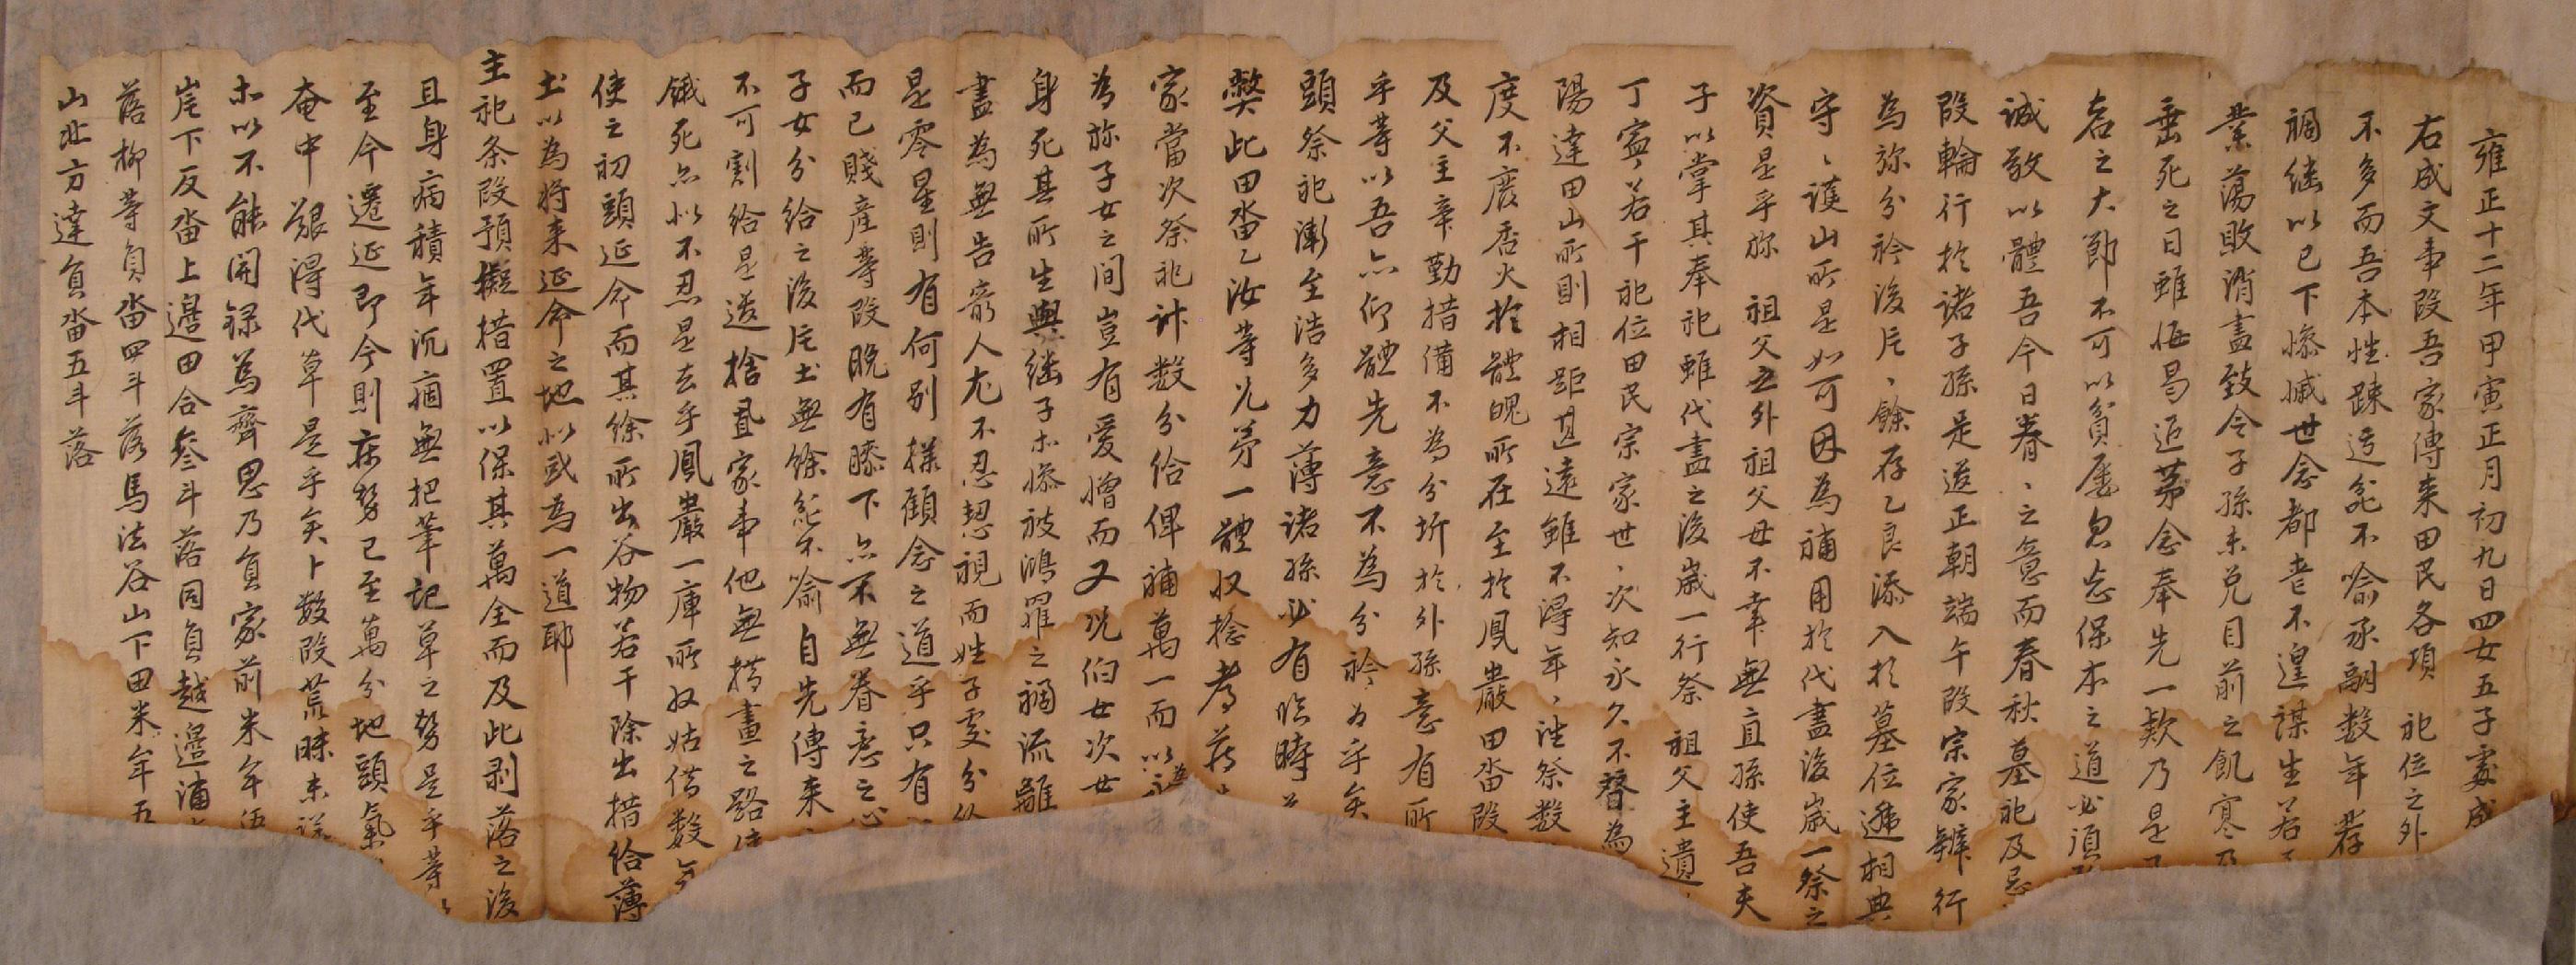 윤복삼(尹卜三)이 1825년에 작성한 산지(山地) 방매문기